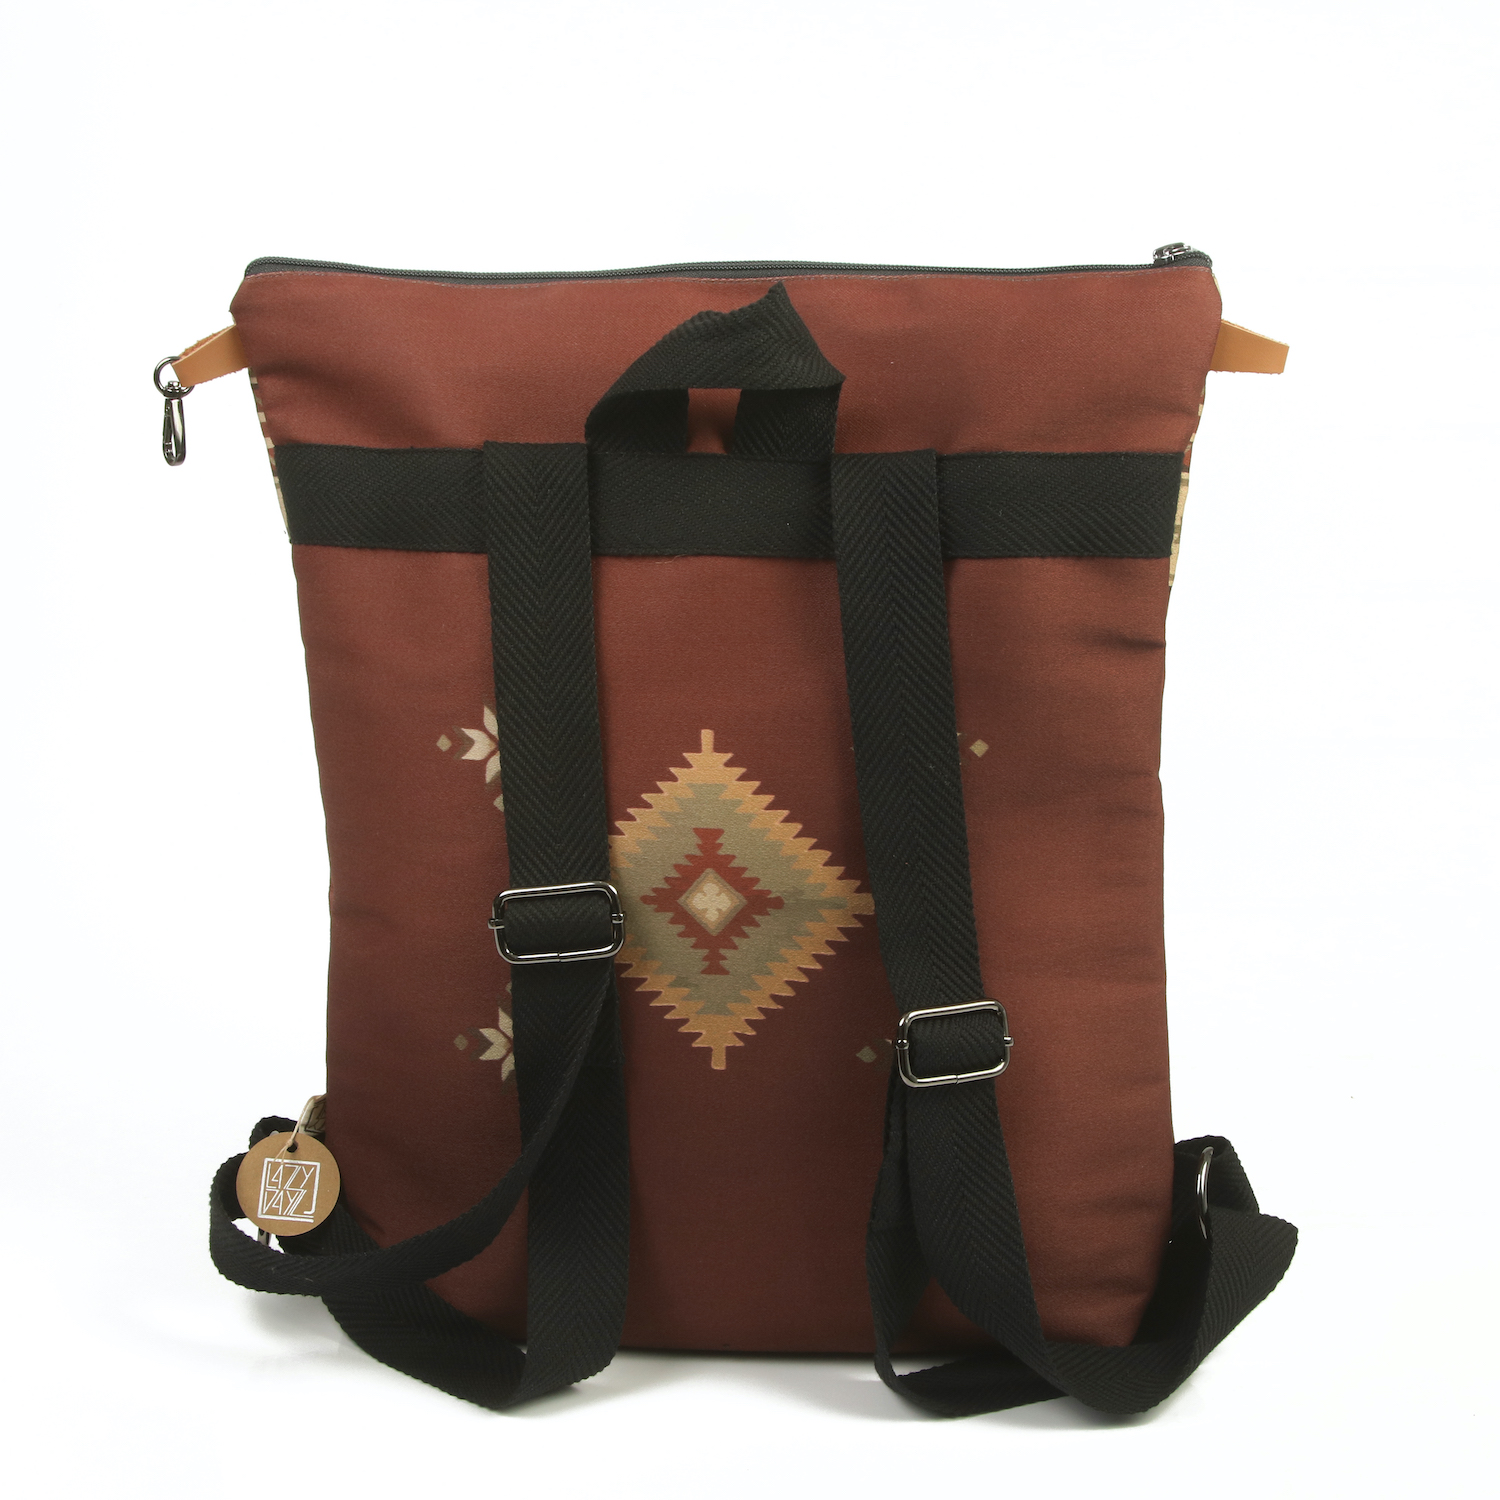 LazyDayz Designs Backpack γυναικείος σάκος πλάτης χειροποίητος bb0505c